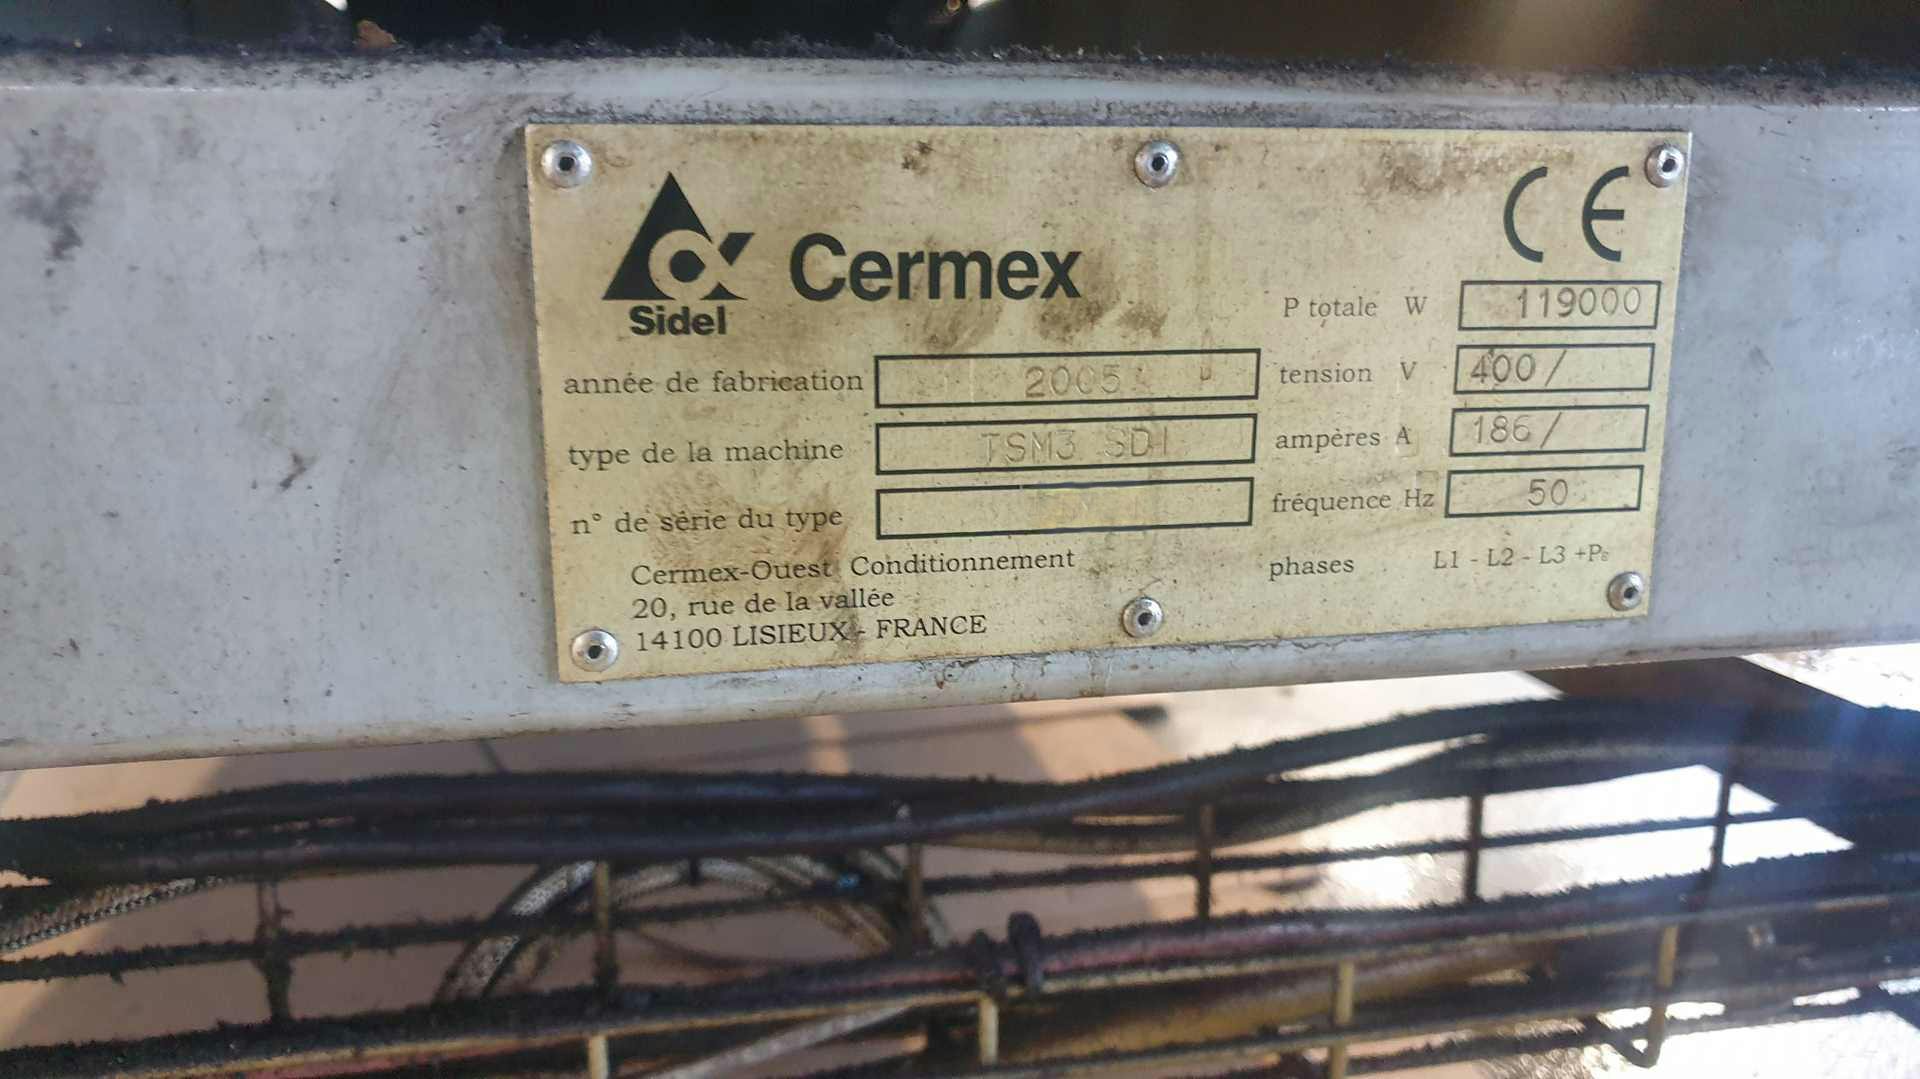 Placa de identificación of SIDEL CERMEX TSM3 SDI